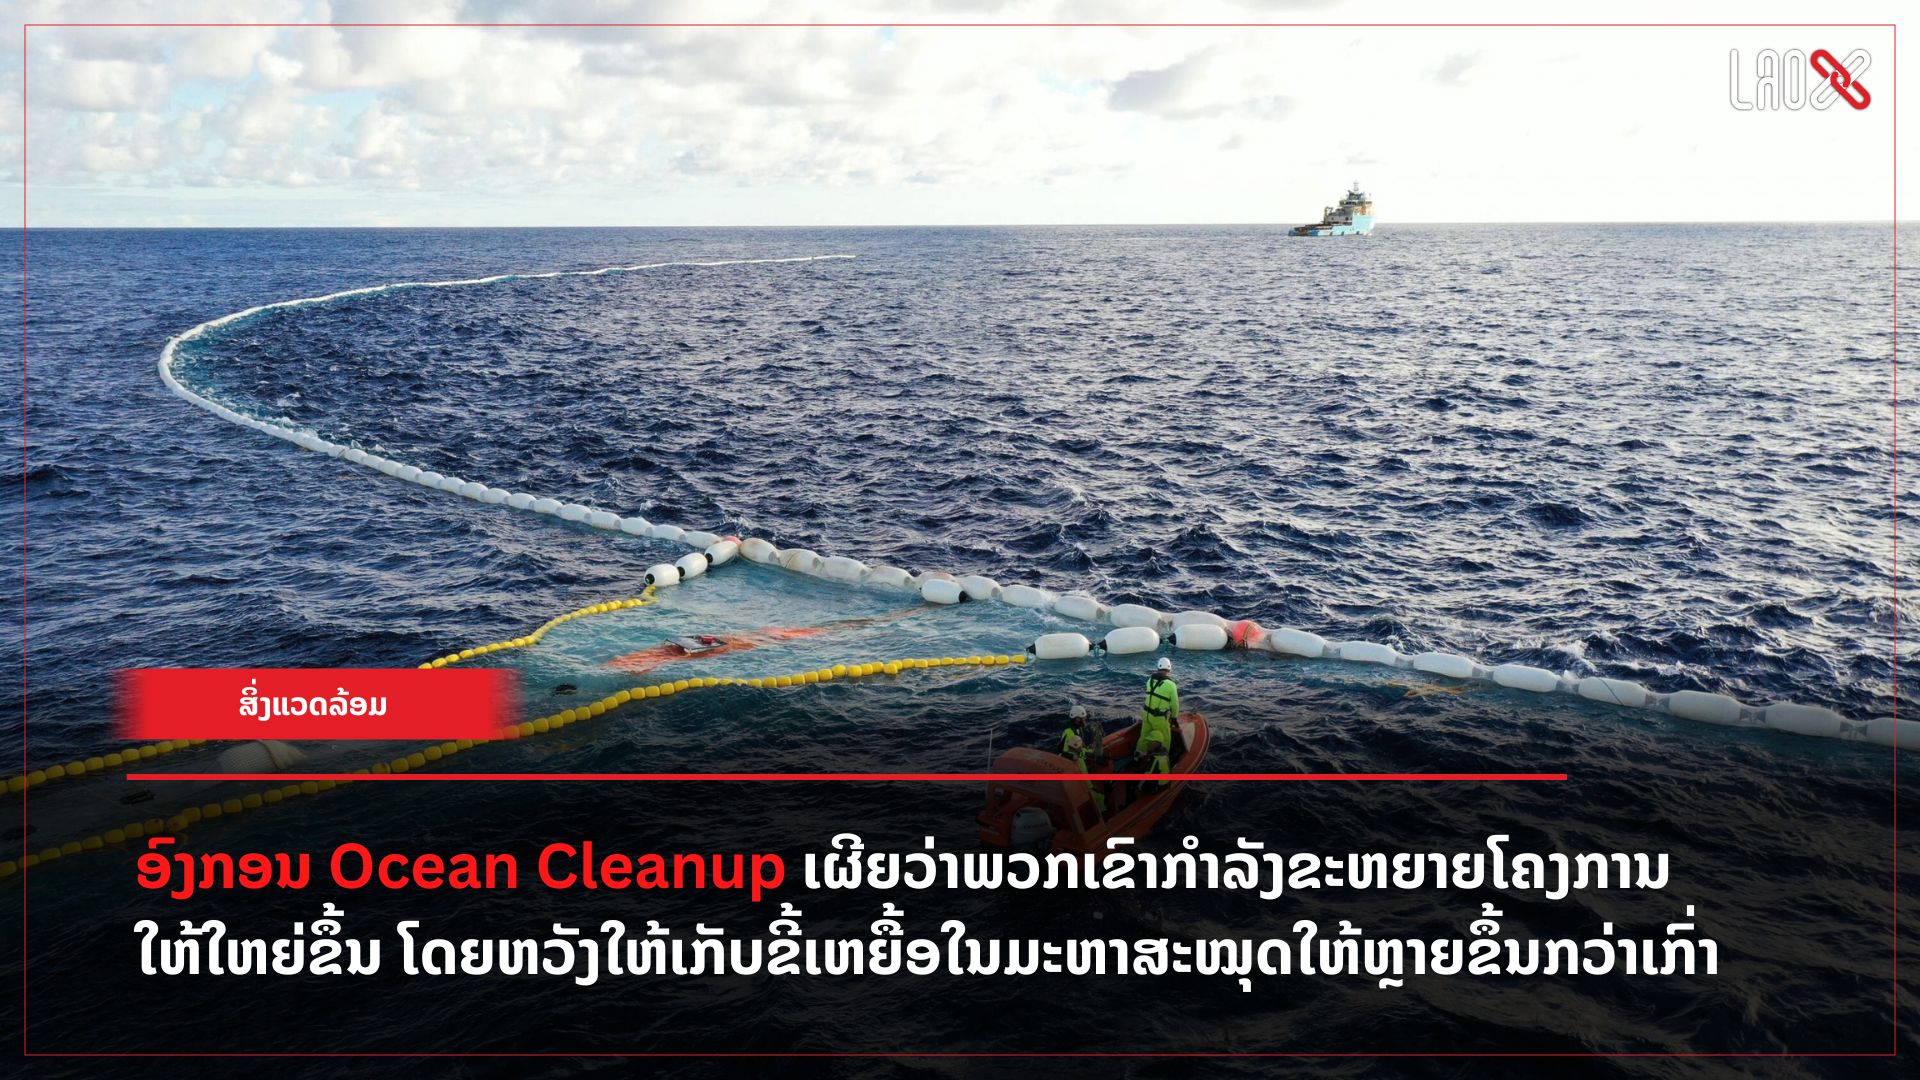 ອົງກອນ The Ocean Cleanup